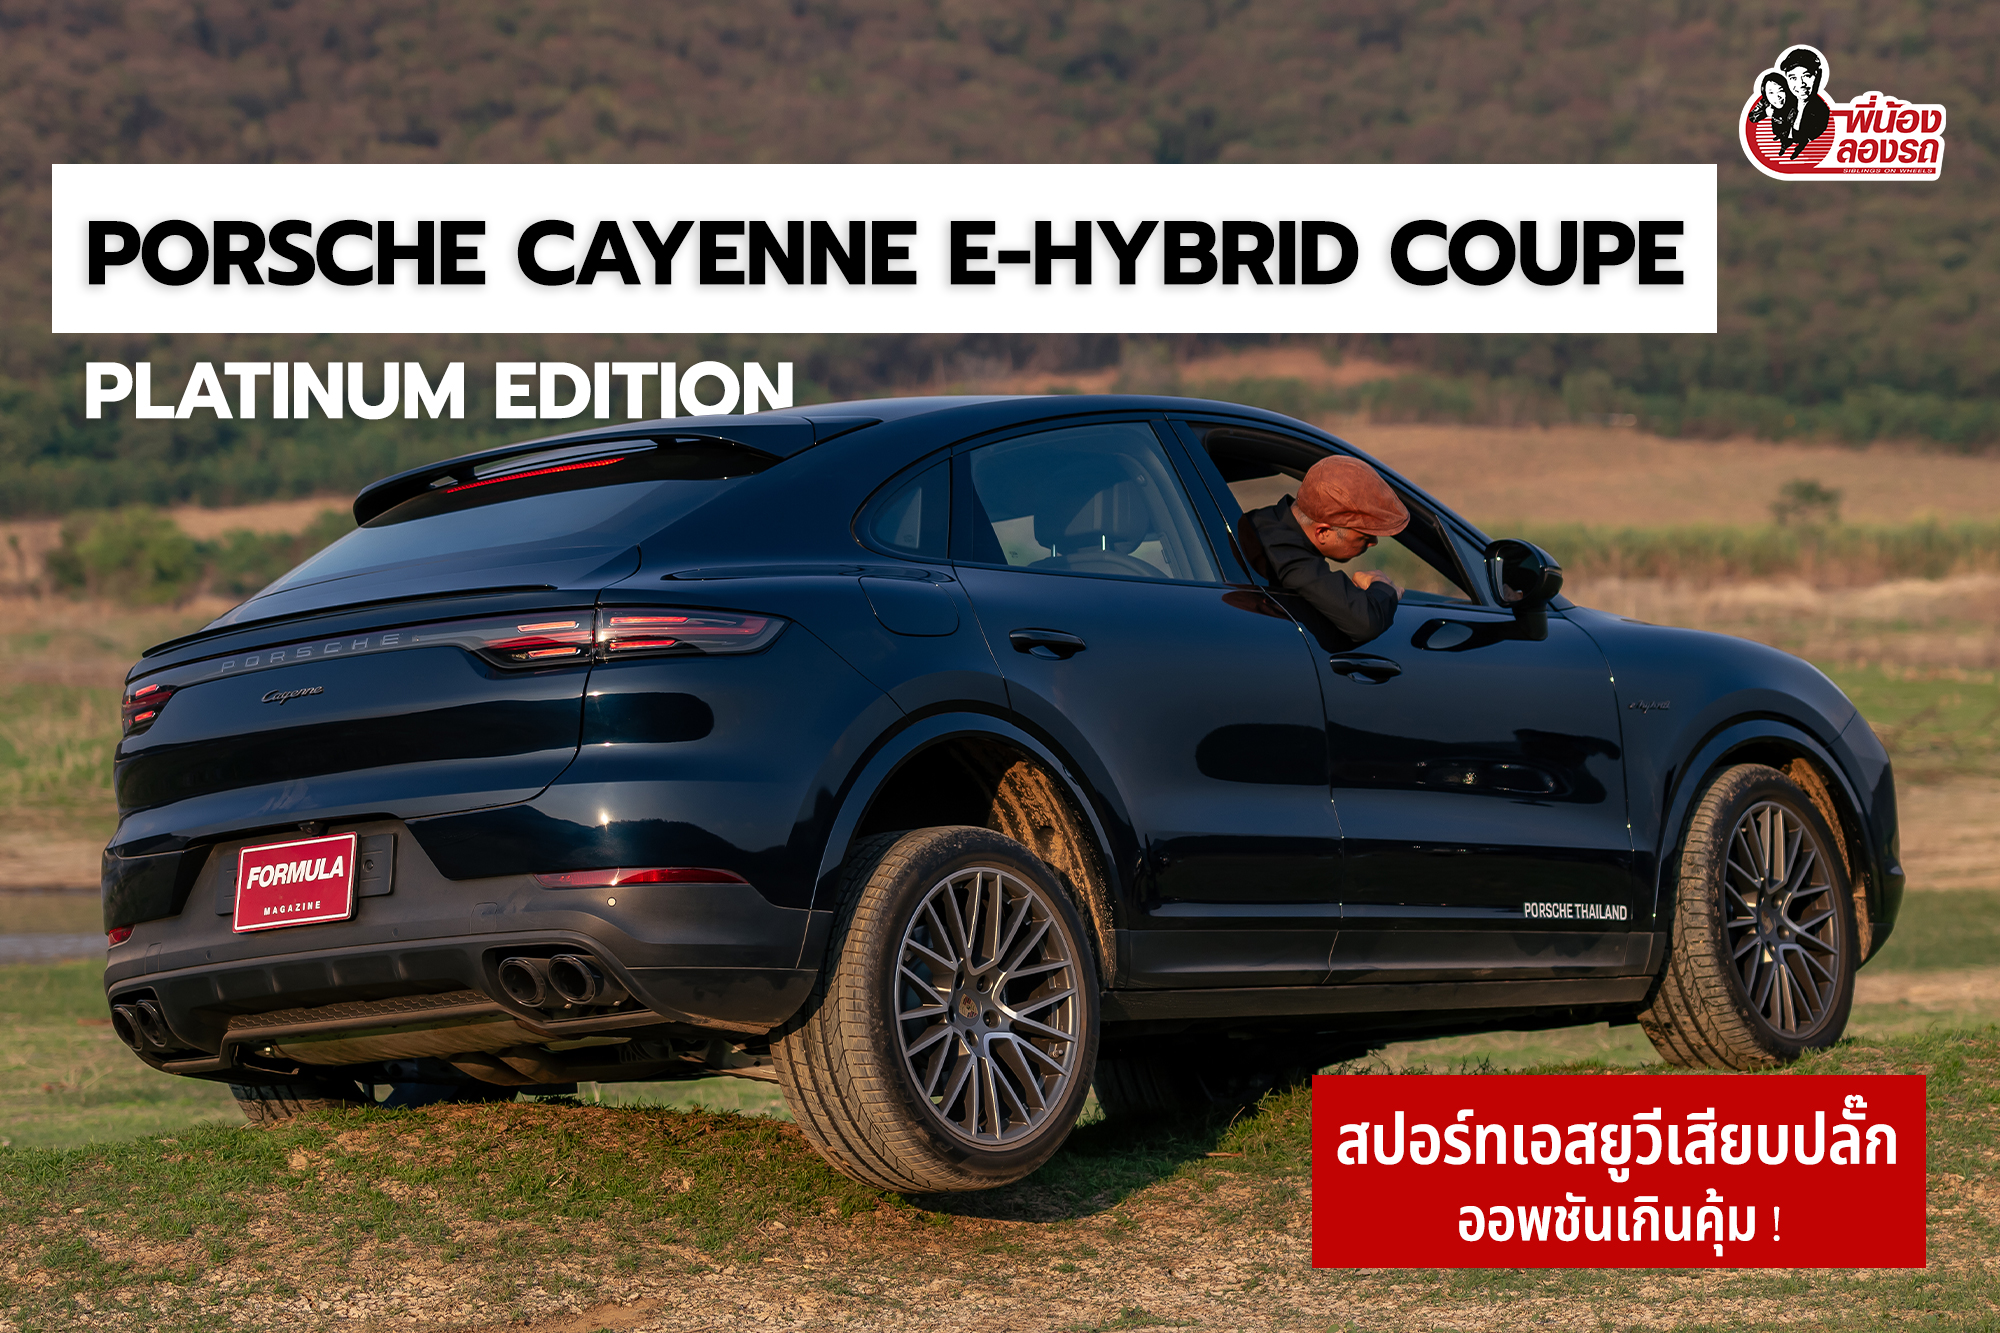 รีวิว Porsche Cayenne e-Hybrid Coupe Platinum Edition | พี่น้องลองรถ Season 9